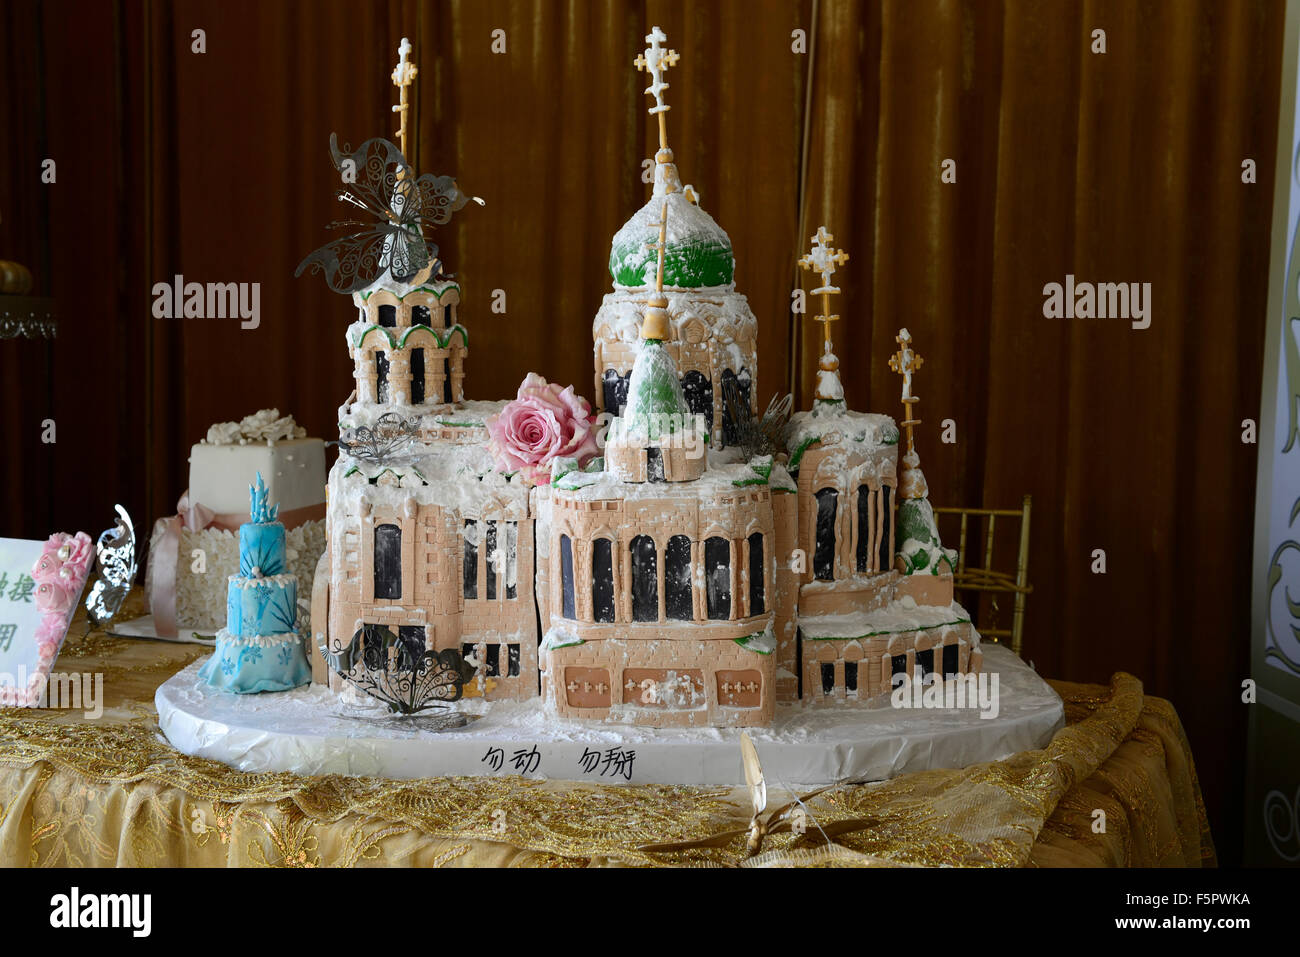 Aufwendige Hochzeitstorte orthodoxe religiöse Gebäude Kirche Kathedrale genießbare Lebensmittel Feier feiern Harbin China RM World Stockfoto